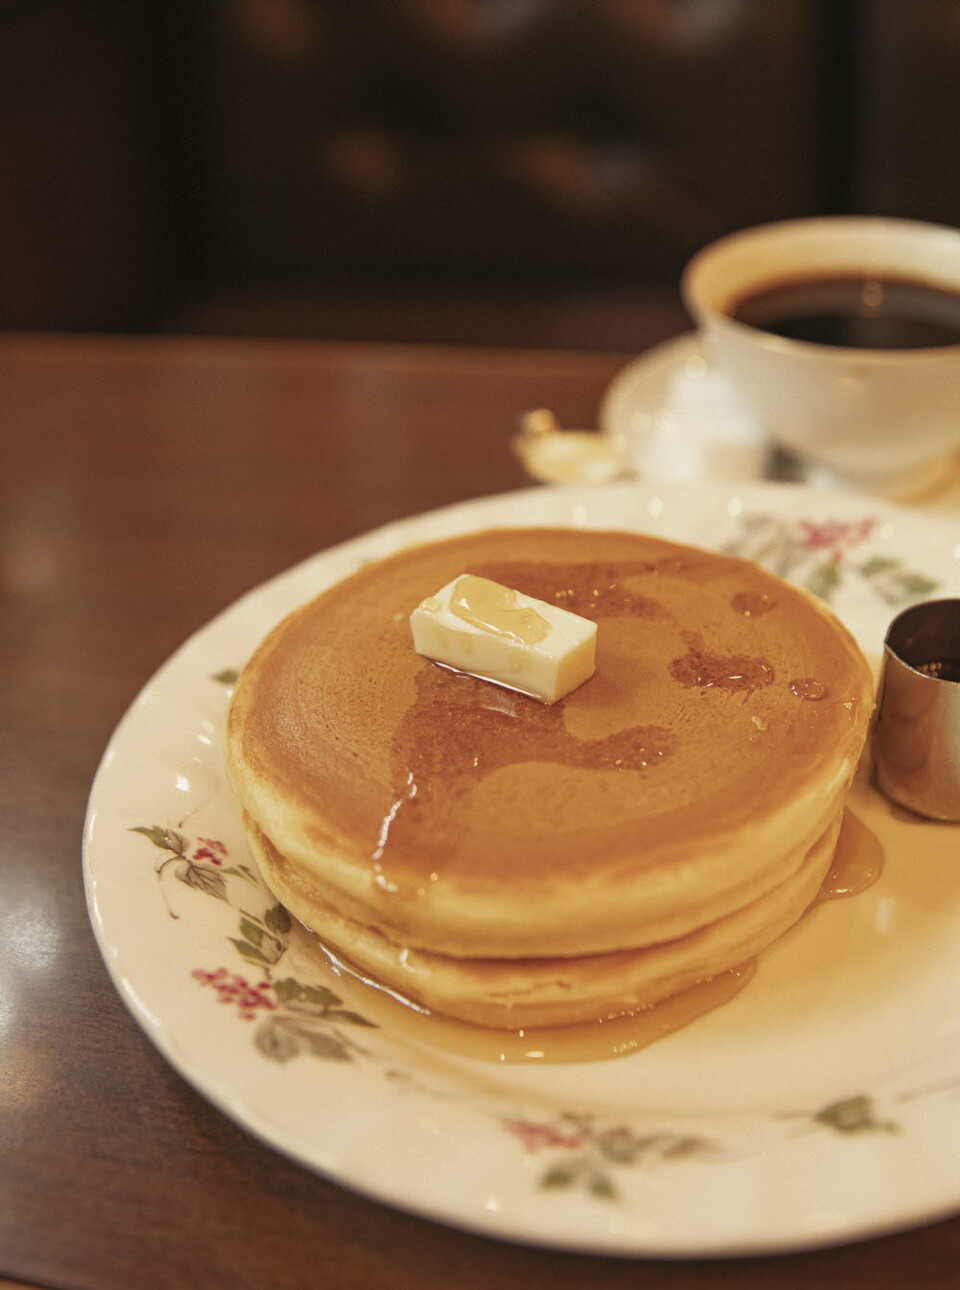  아침 식사로 좋은 마루후쿠 커피와 오리지널 레시피 핫케이크